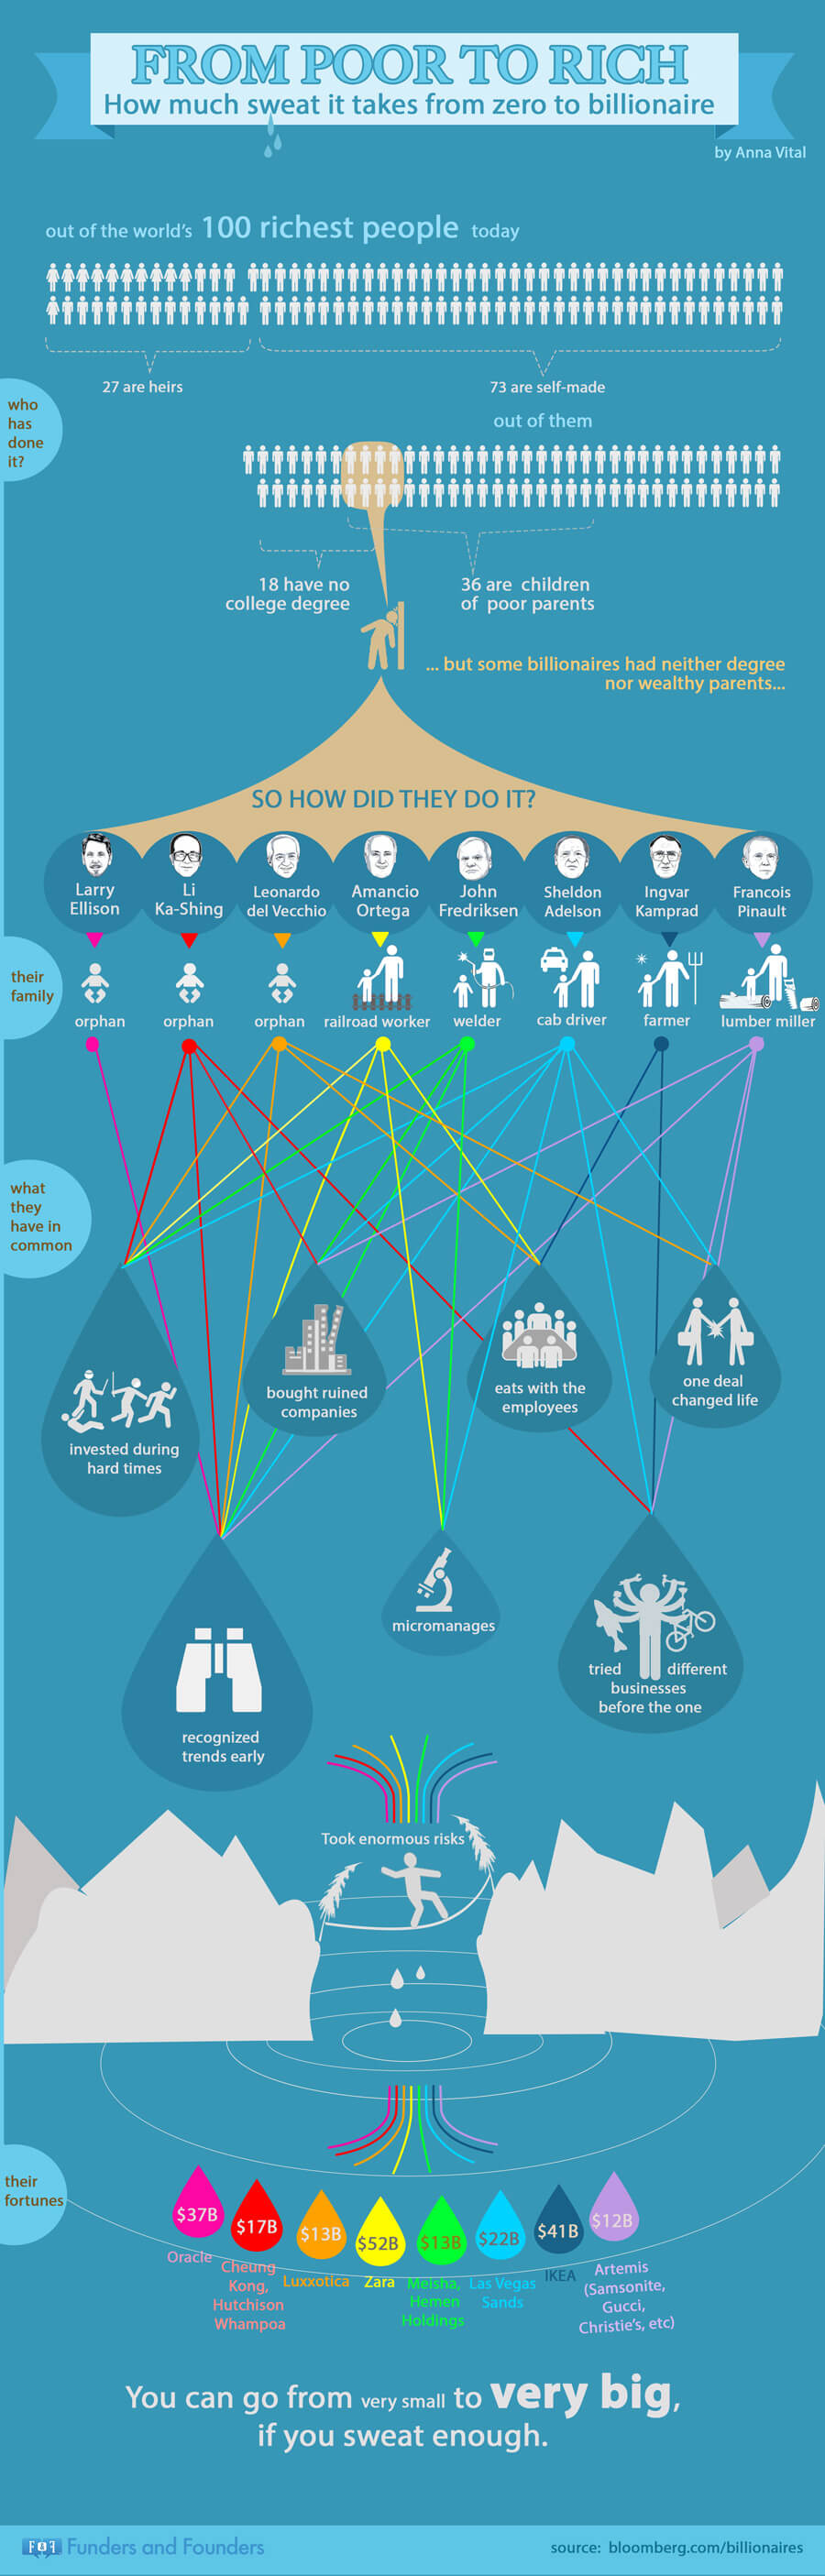 infografika a világ leggazdagabb embereinek a sikeréről